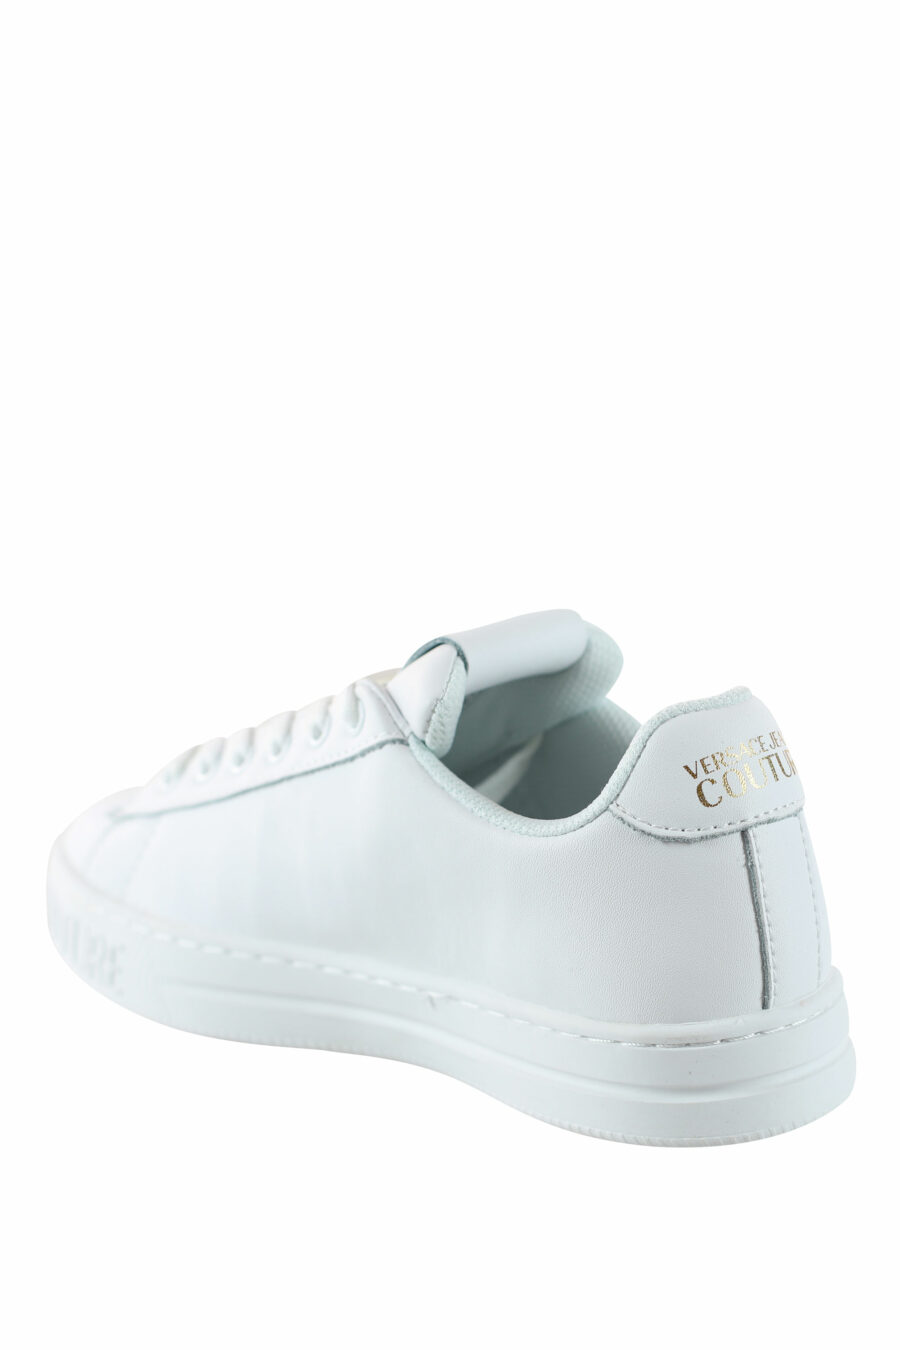 Zapatillas blancas y doradas con logo circular - IMG 4554